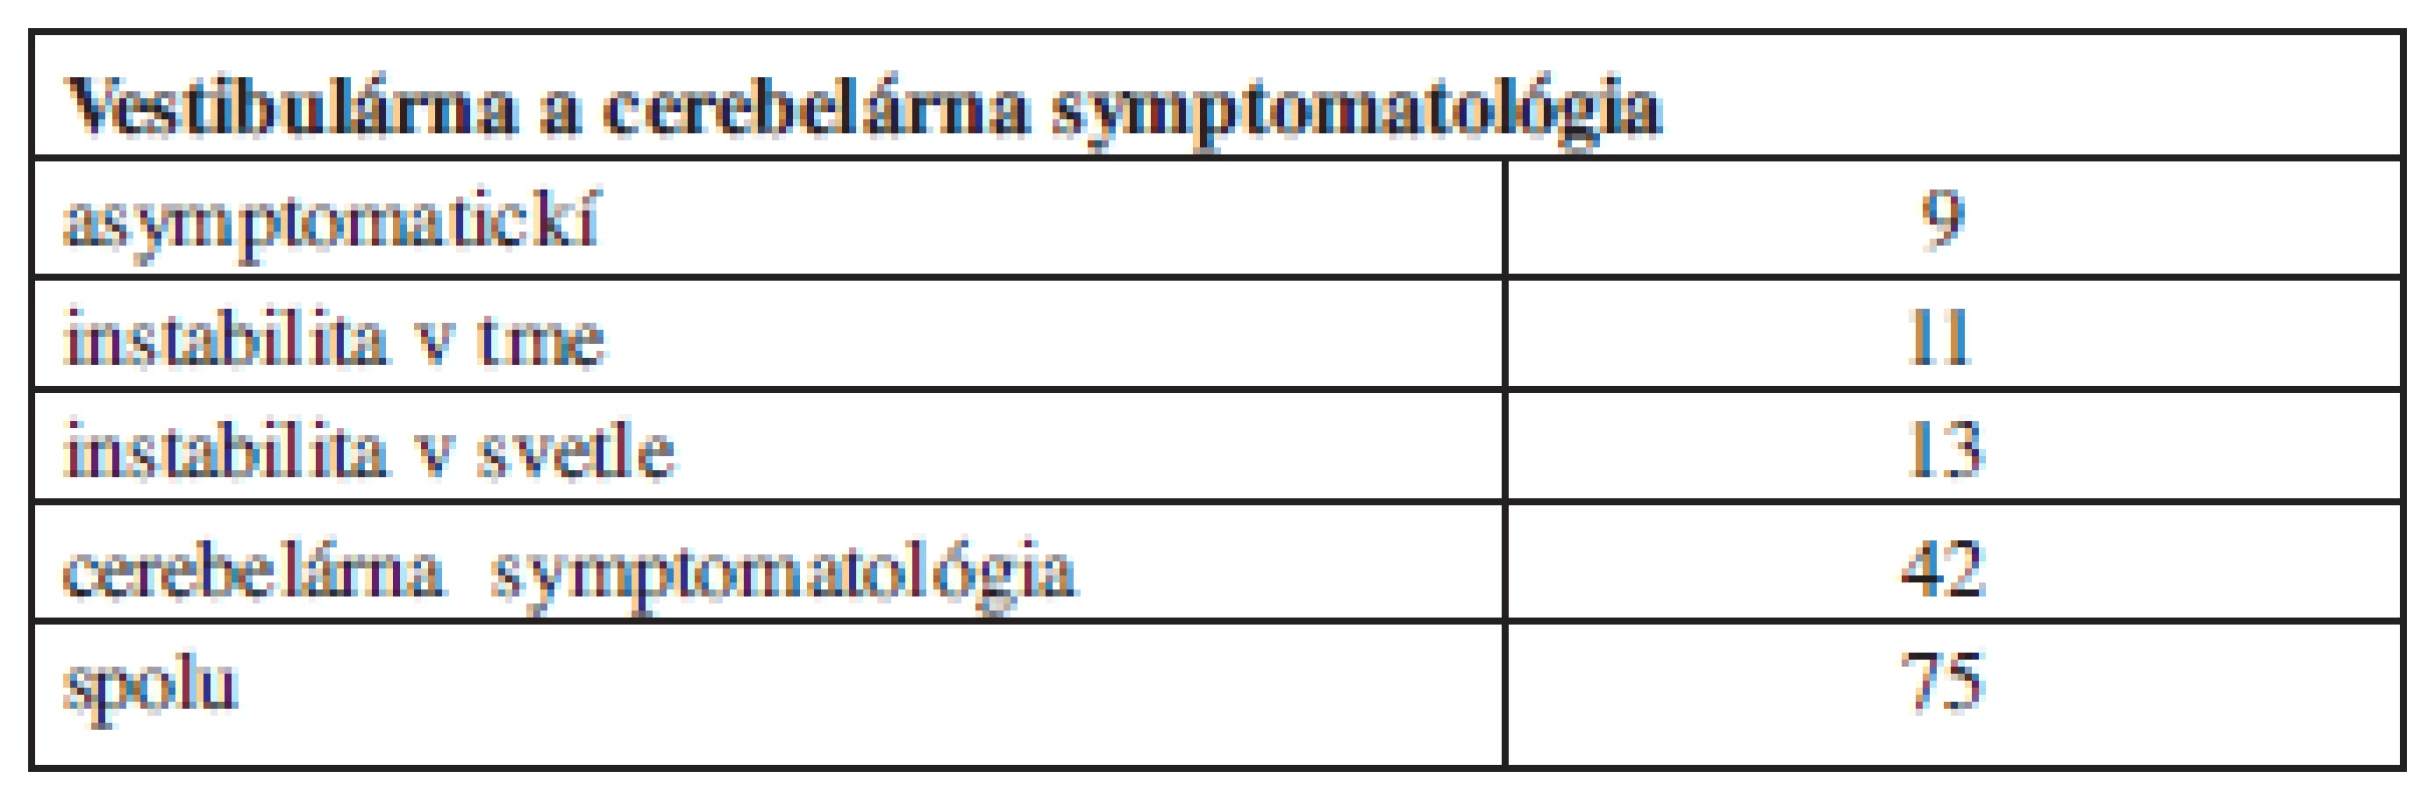 Vestibulárna a cerebelárna symptomatológia v skupine veľkých tumorov.